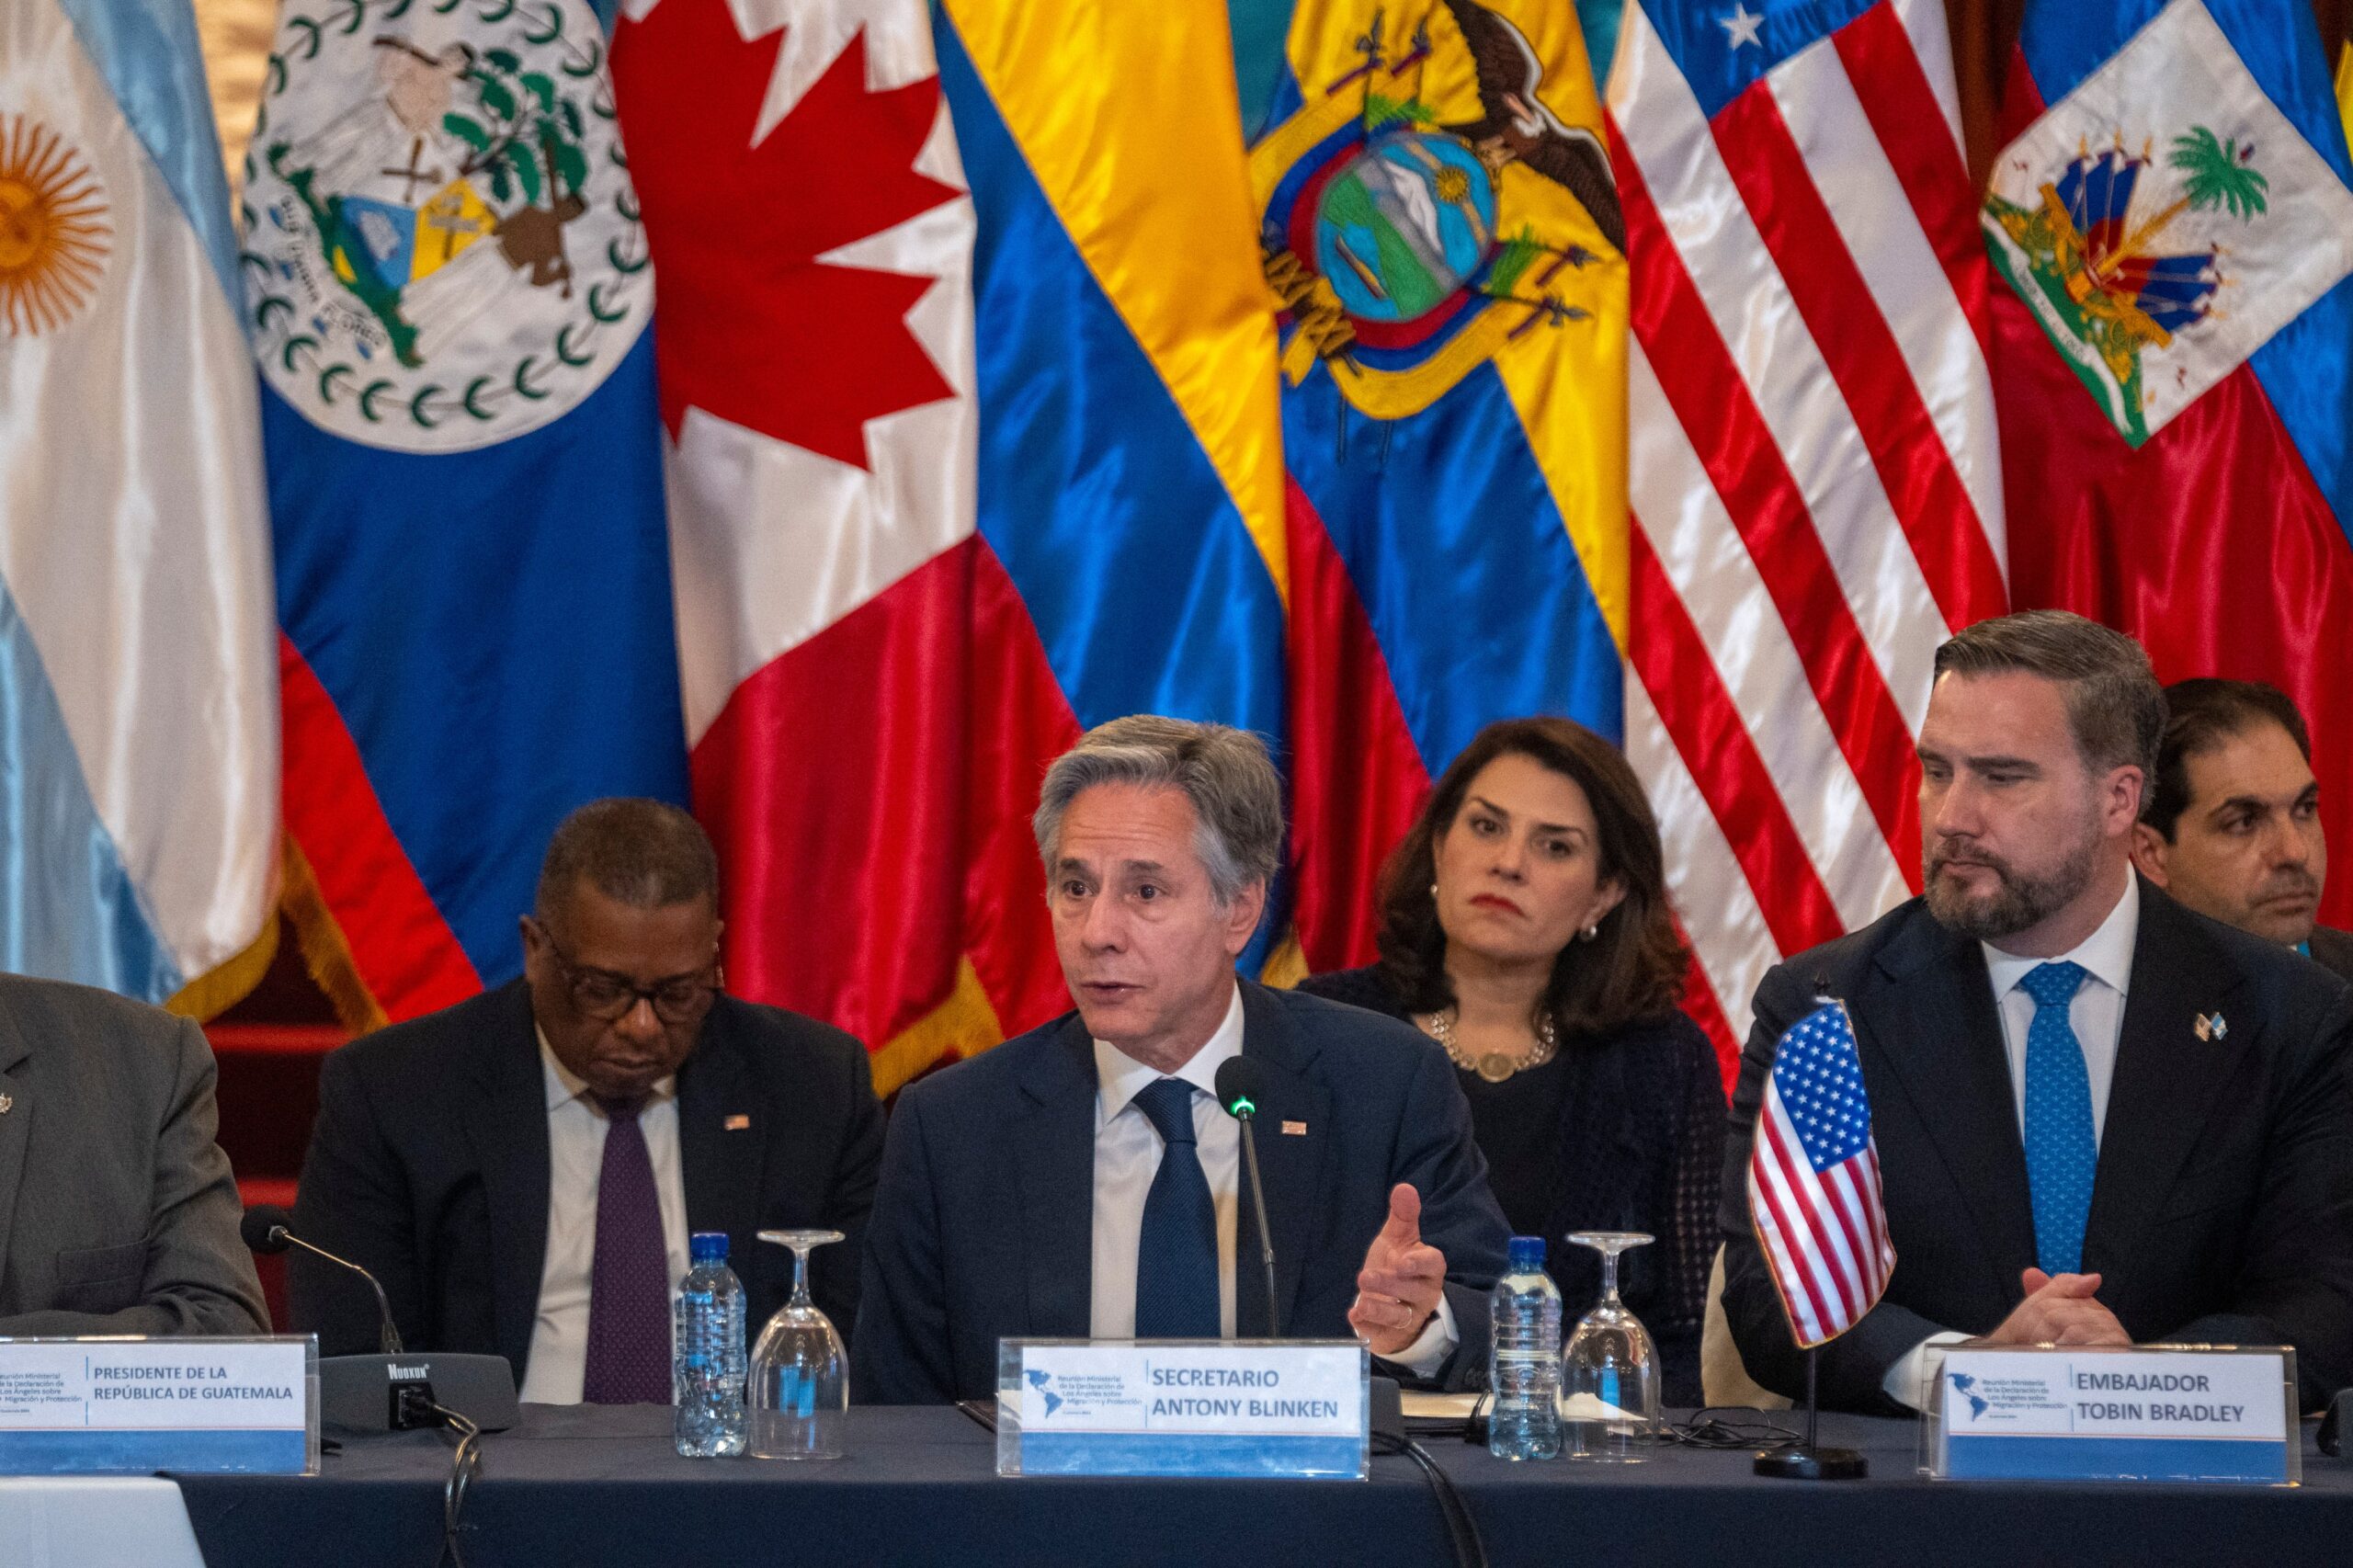 EE.UU. amplía sanciones a quienes faciliten la “migración irregular”, principalmente vía Nicaragua – La Opinión